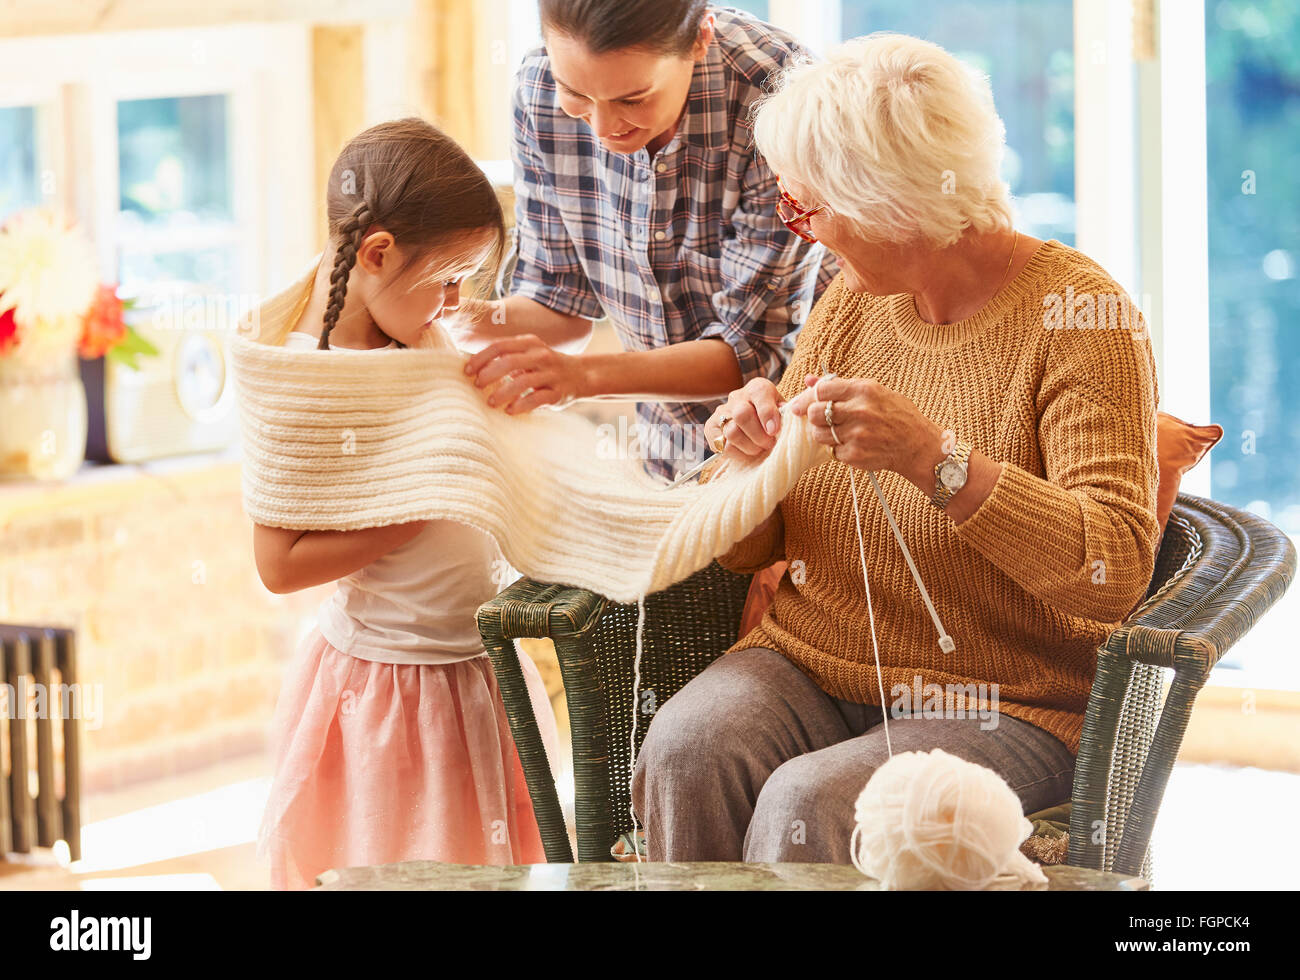 Grand-mère tricot écharpe autour de petite-fille Banque D'Images